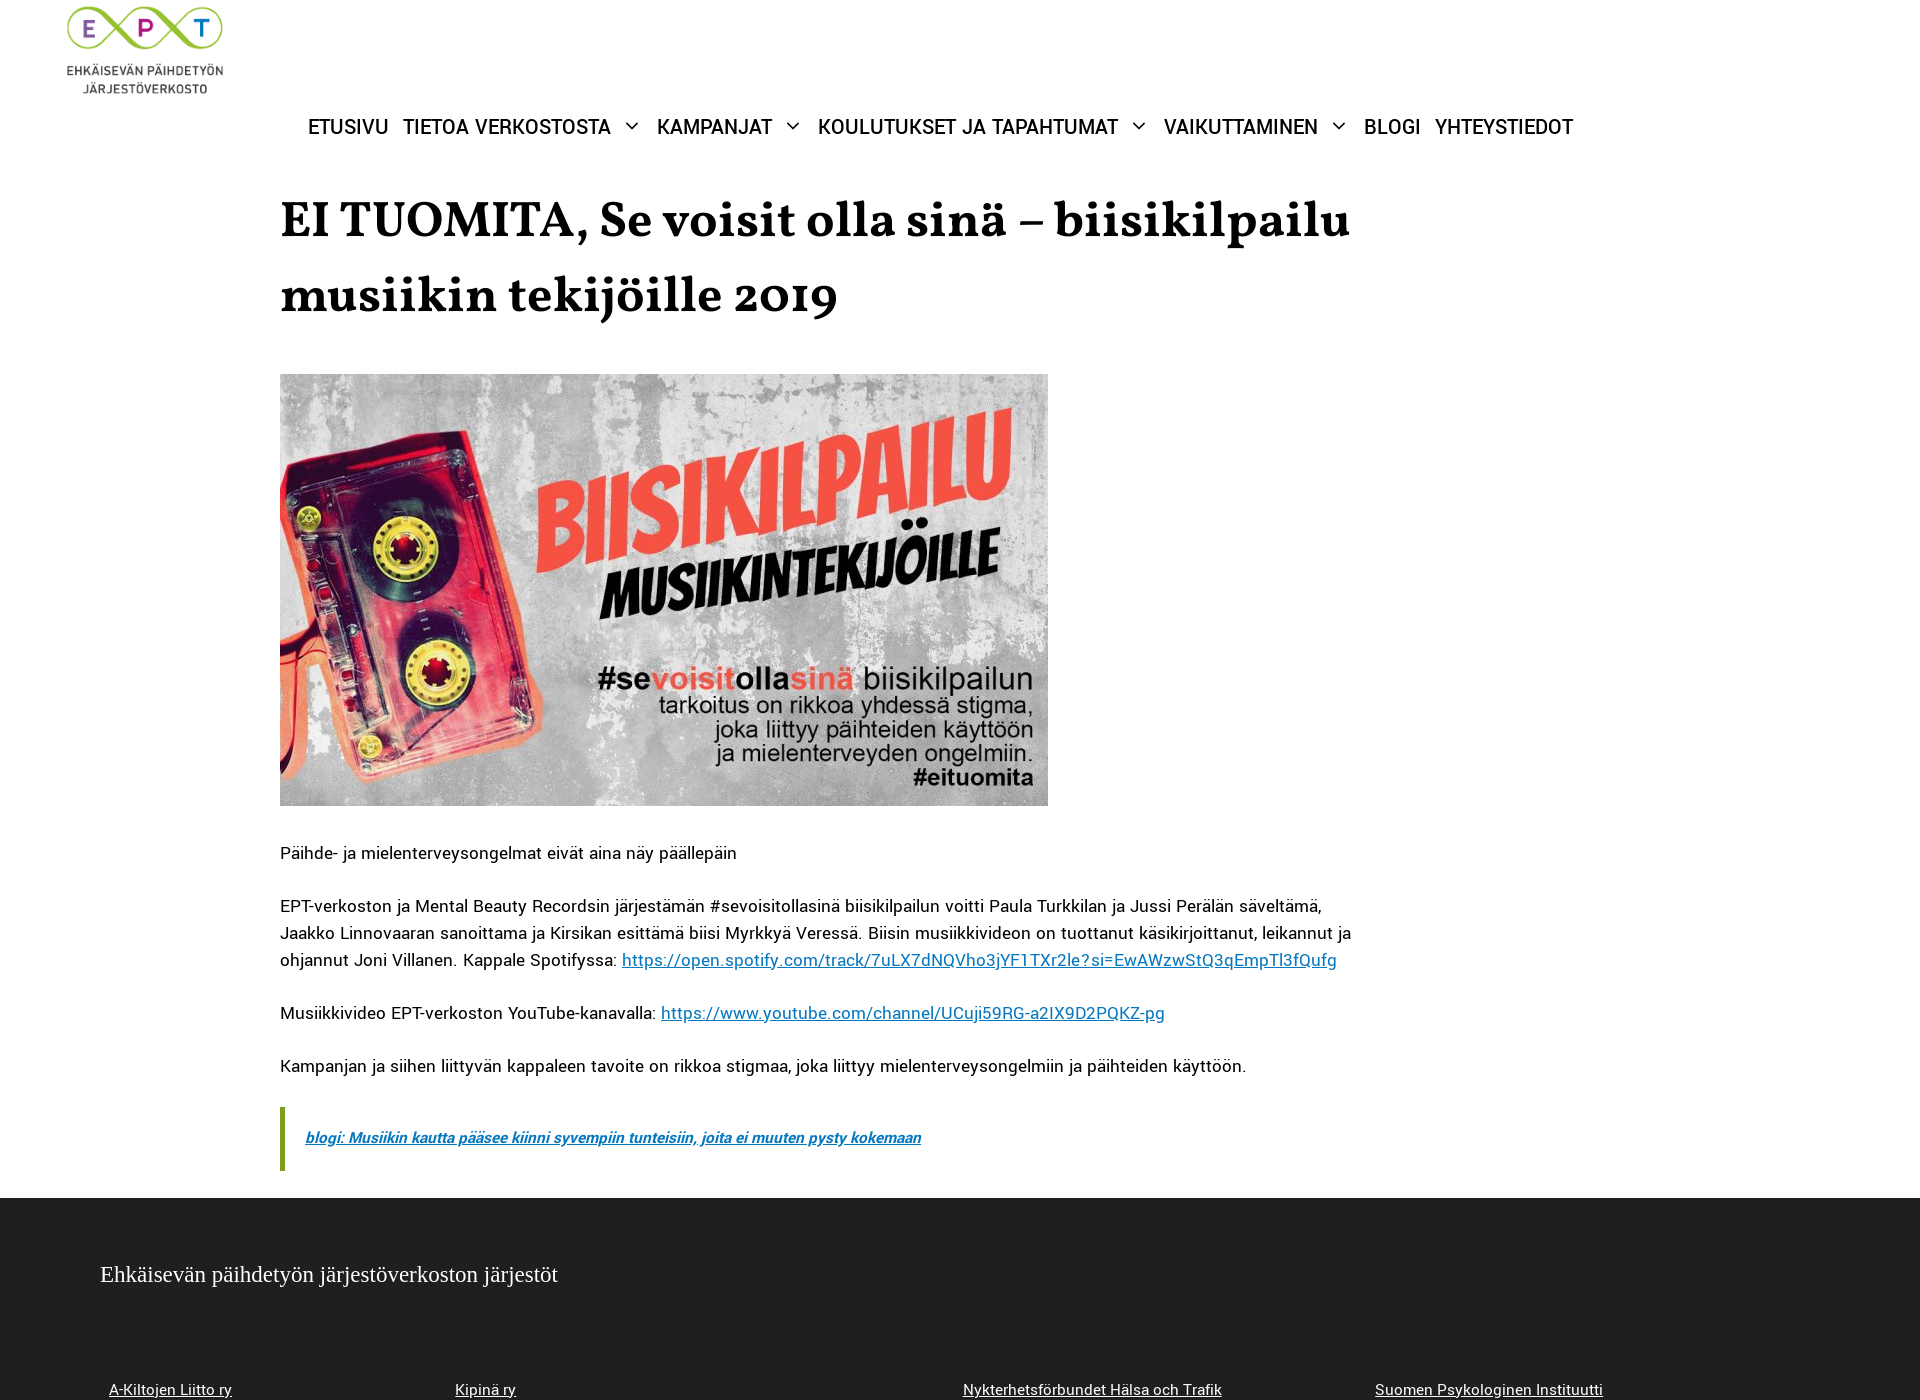 Näyttökuva sevoisitollasinä.fi